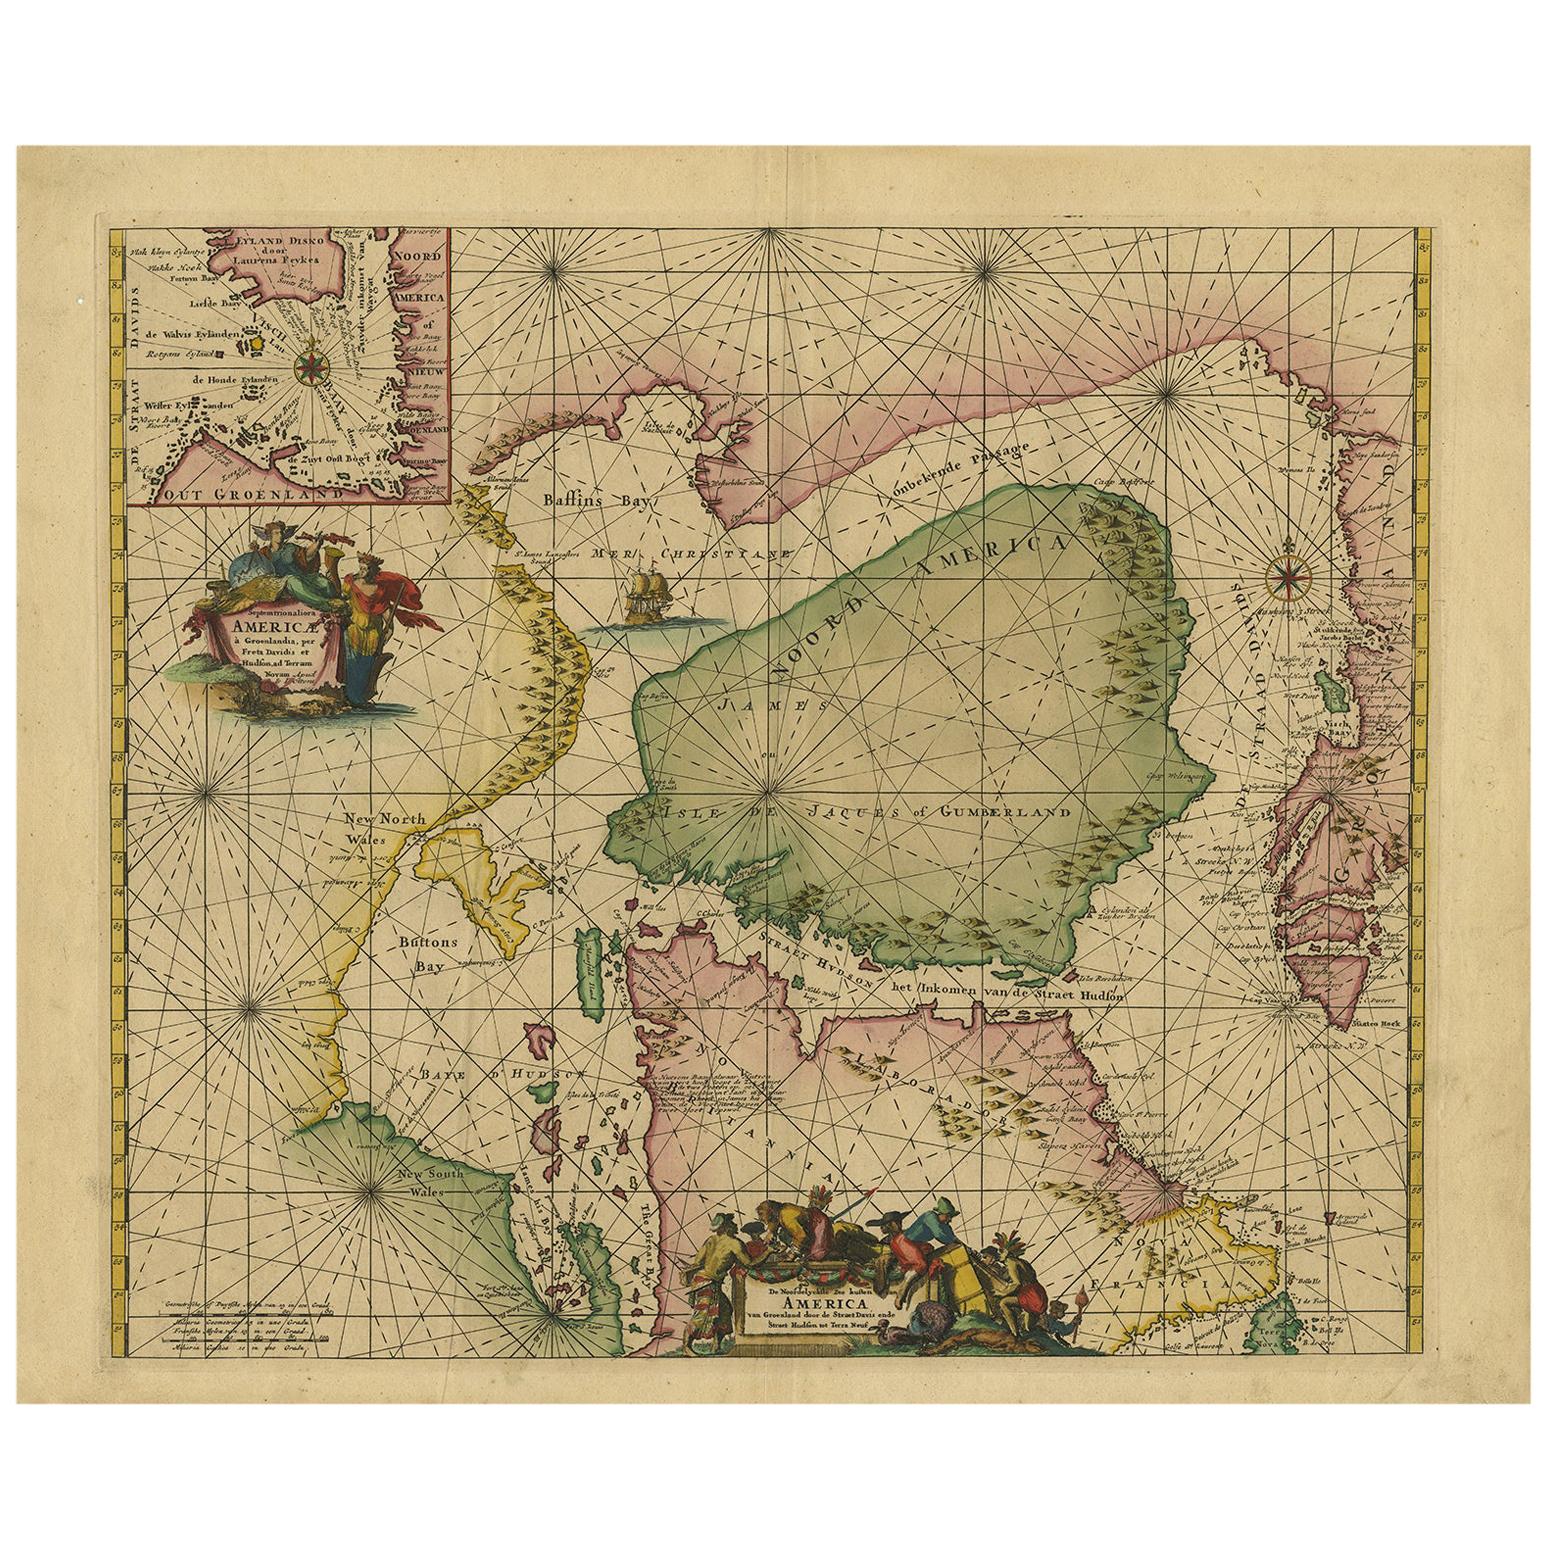 Tableau marin ancien d'Amérique du Nord par Ottens, datant d'environ 1745